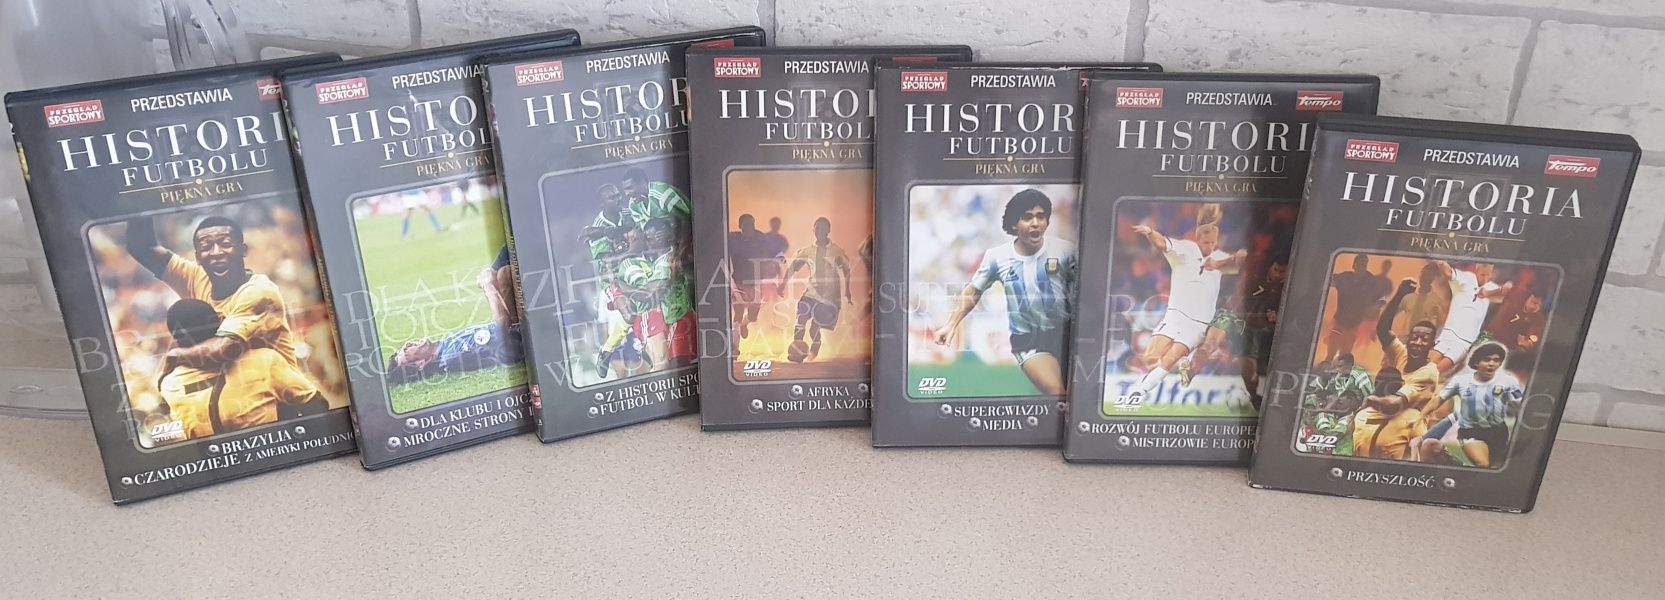 Zestaw płyt DVD - Historia Futbolu